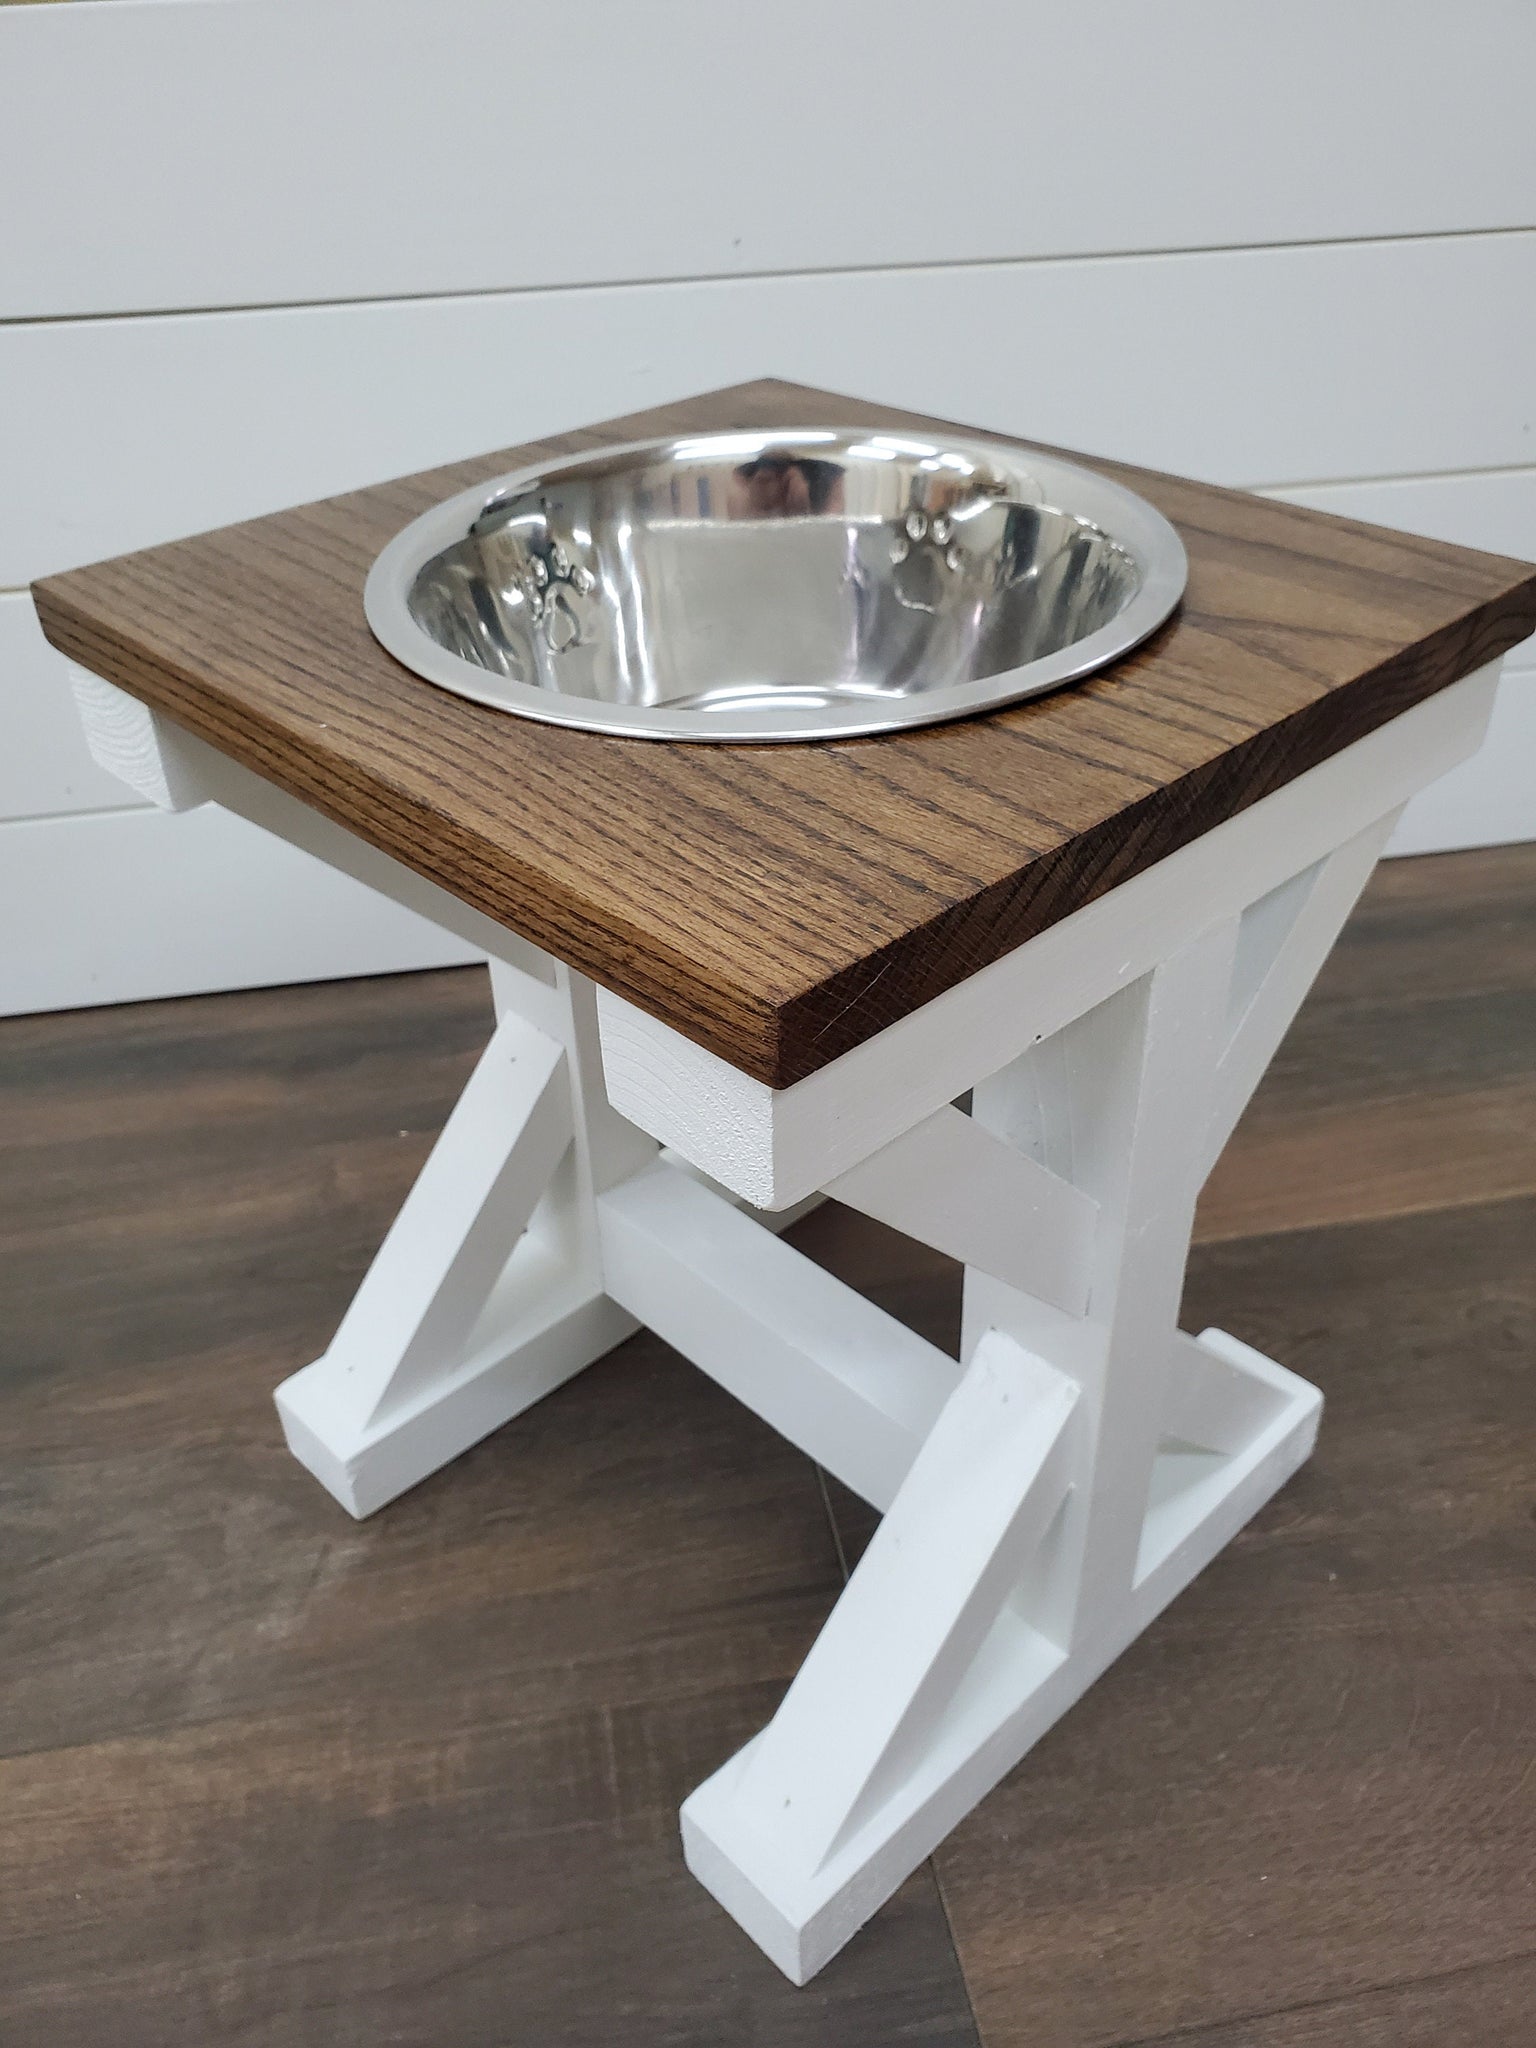 Oak top - Dog Bowl Feeder - Farmhouse Style - Rustic Dog Bowl